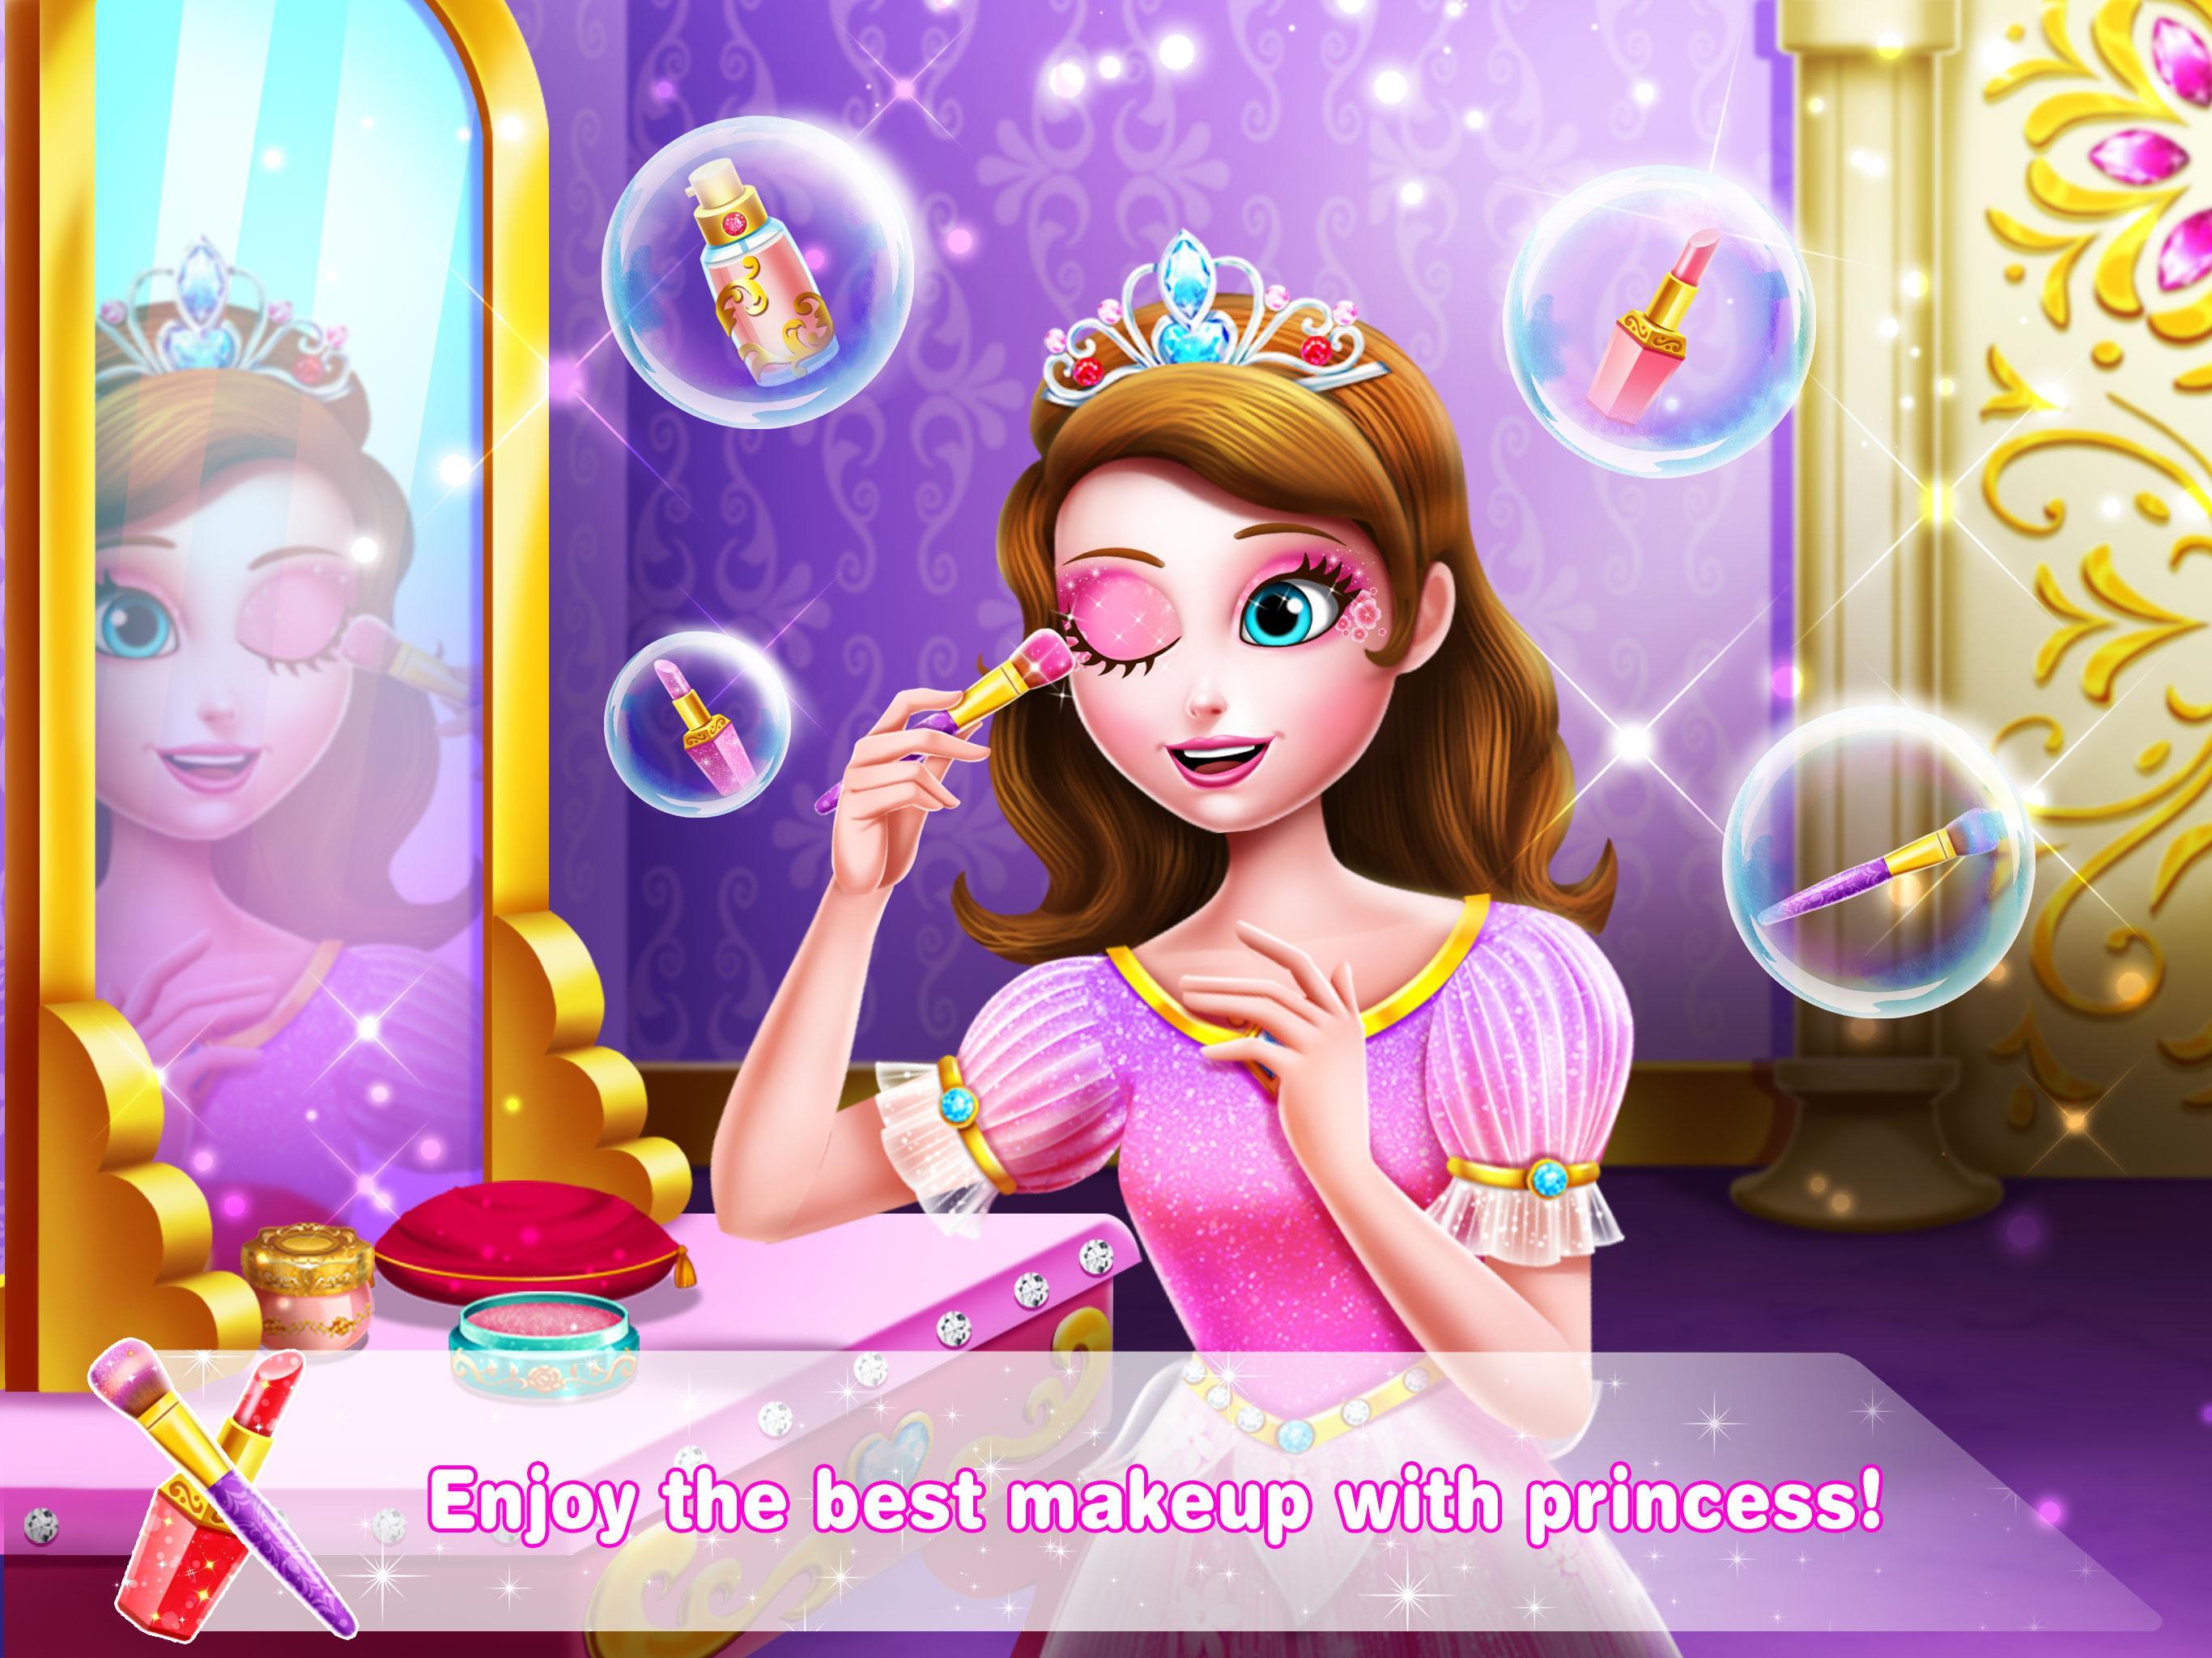 Игра принцесса 1. Зеркало принцессы. Принцесса с единорожкой. Принцесс 8.1. The Unicorn Princess игра.